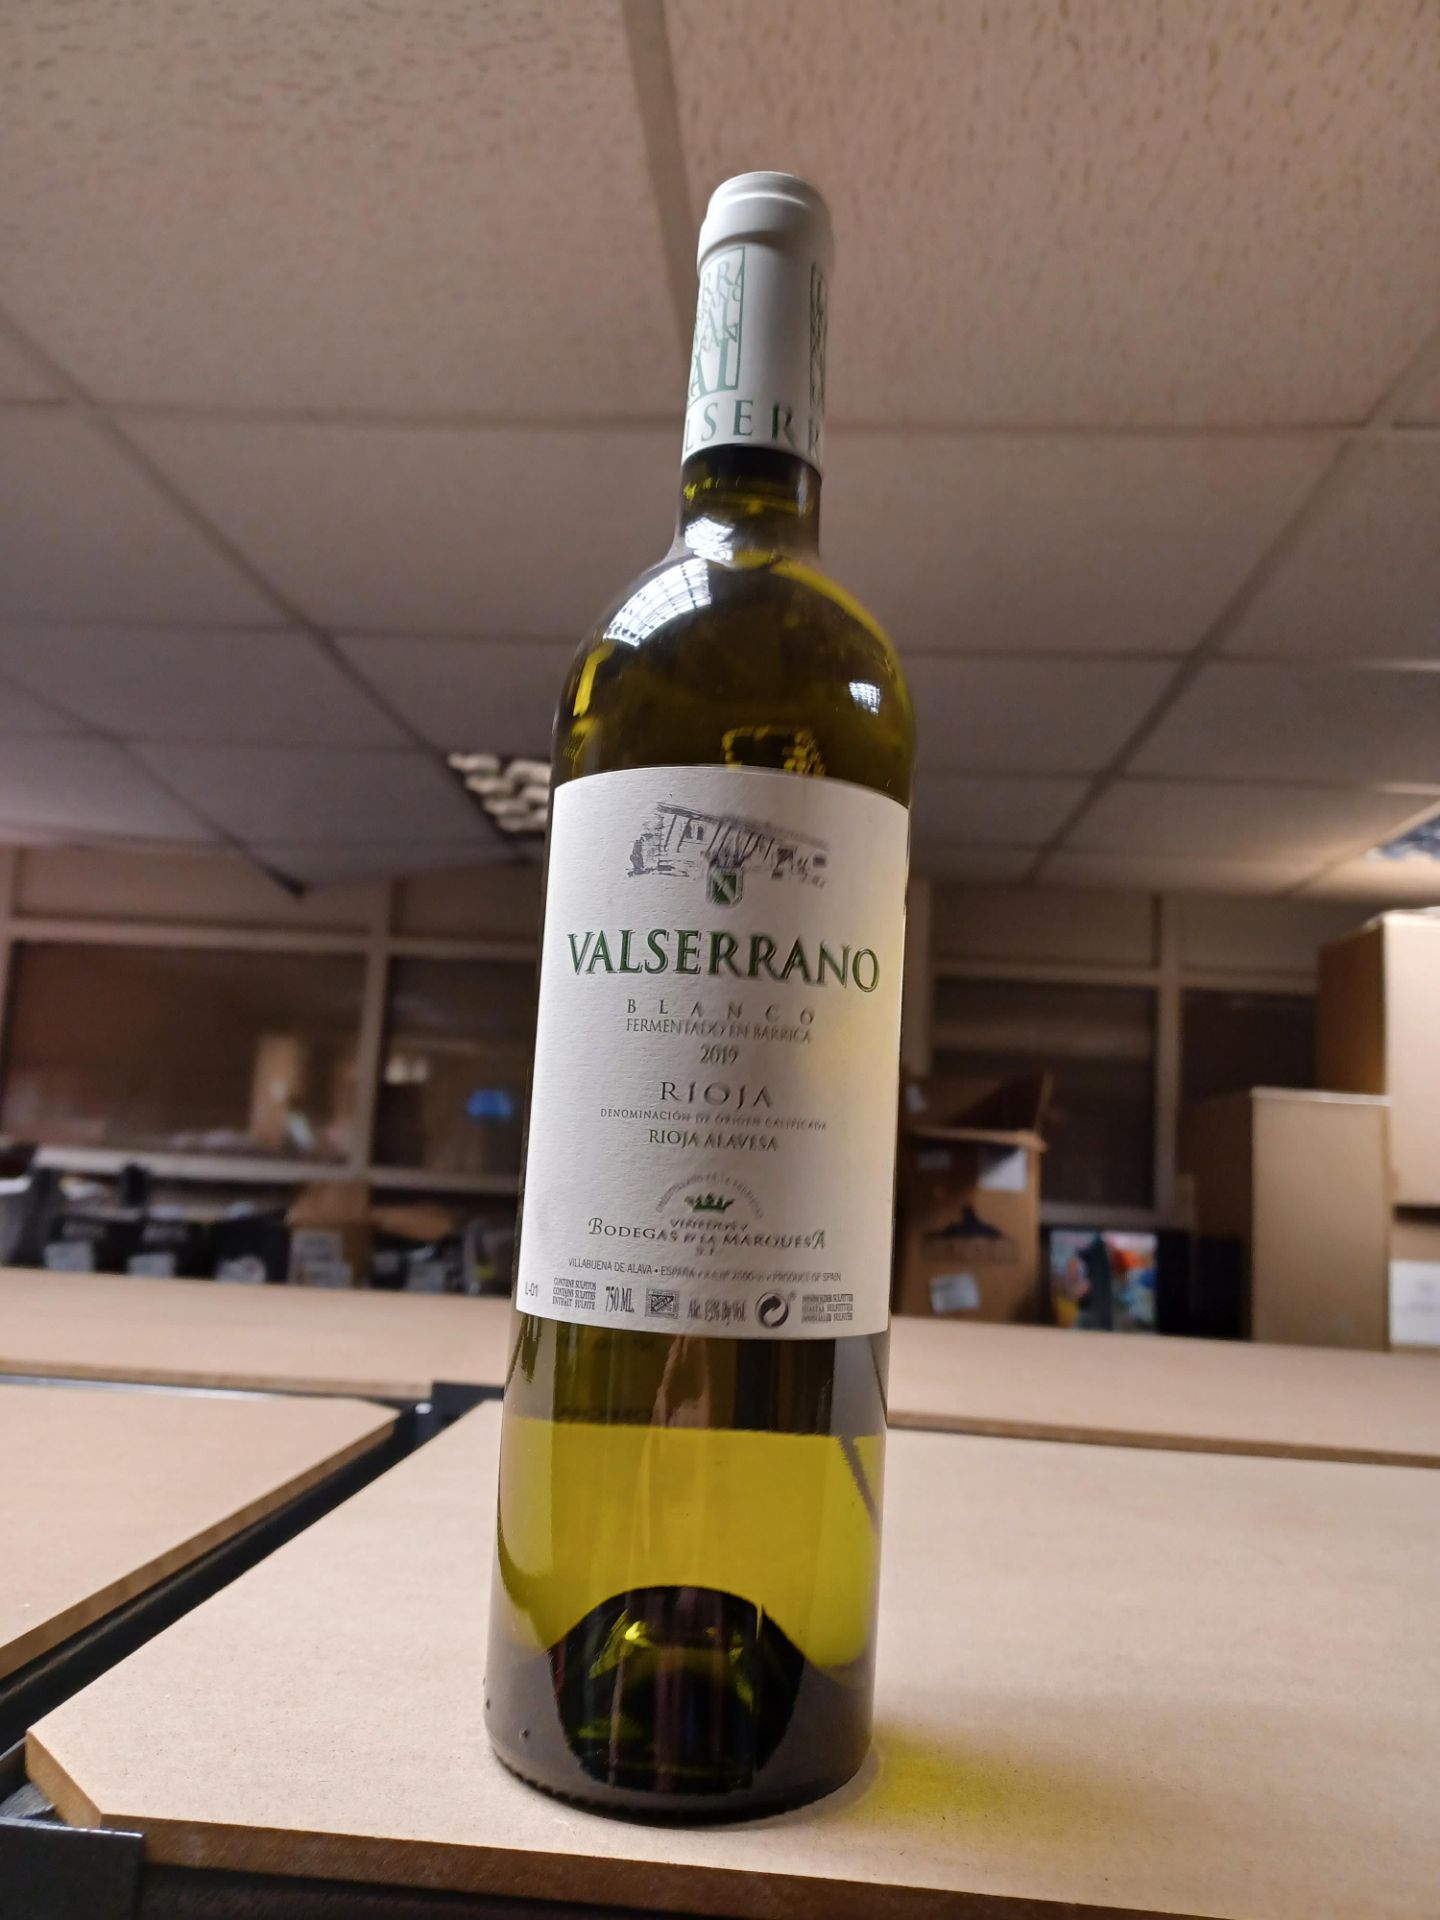 4 x Valserrano Rioja Blanco 2019, Bodegas De La Marquesa RRP £17.00 each - EBR